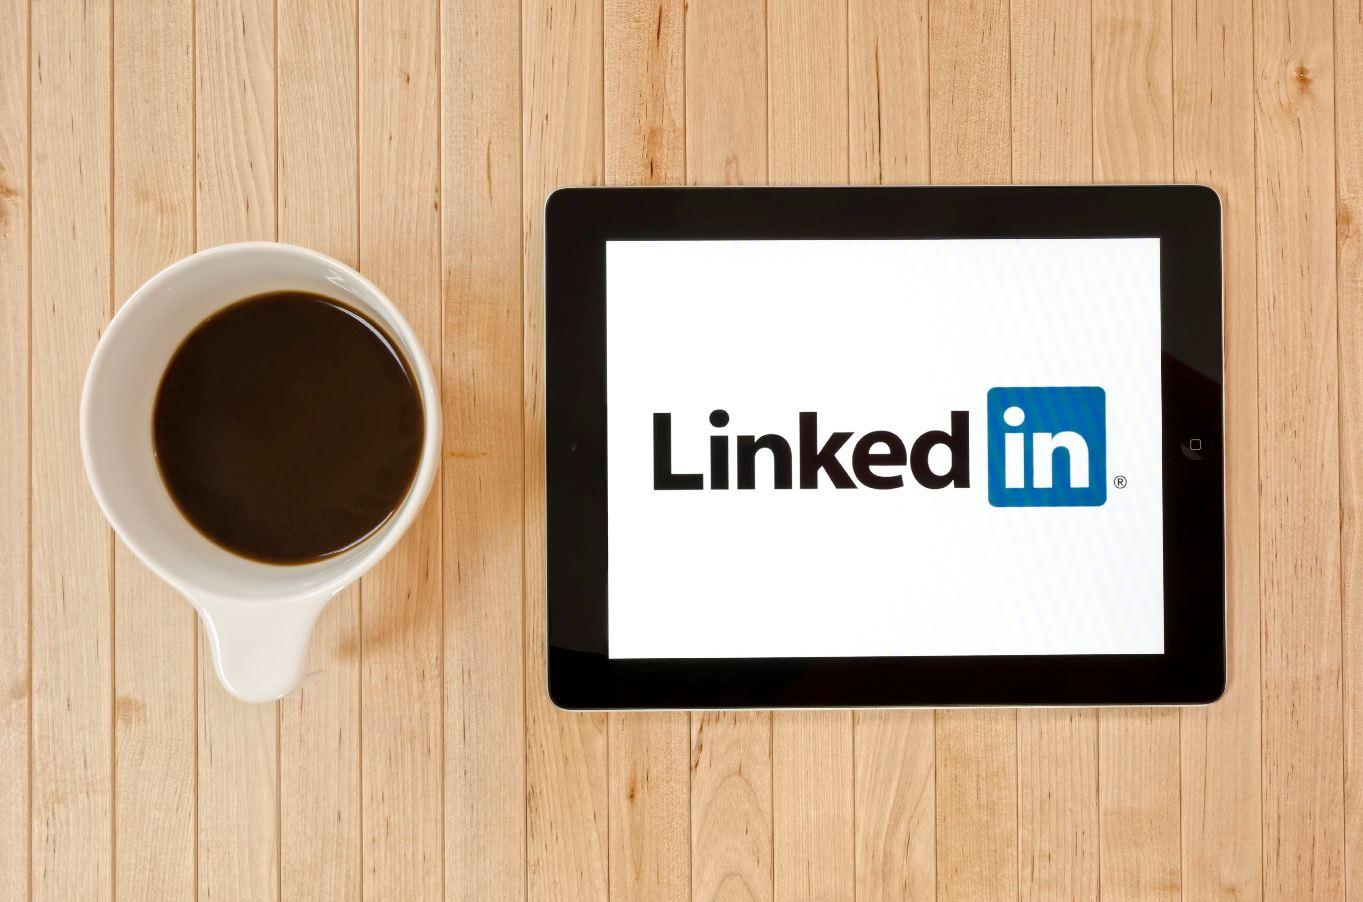 LinkedIn and coffee